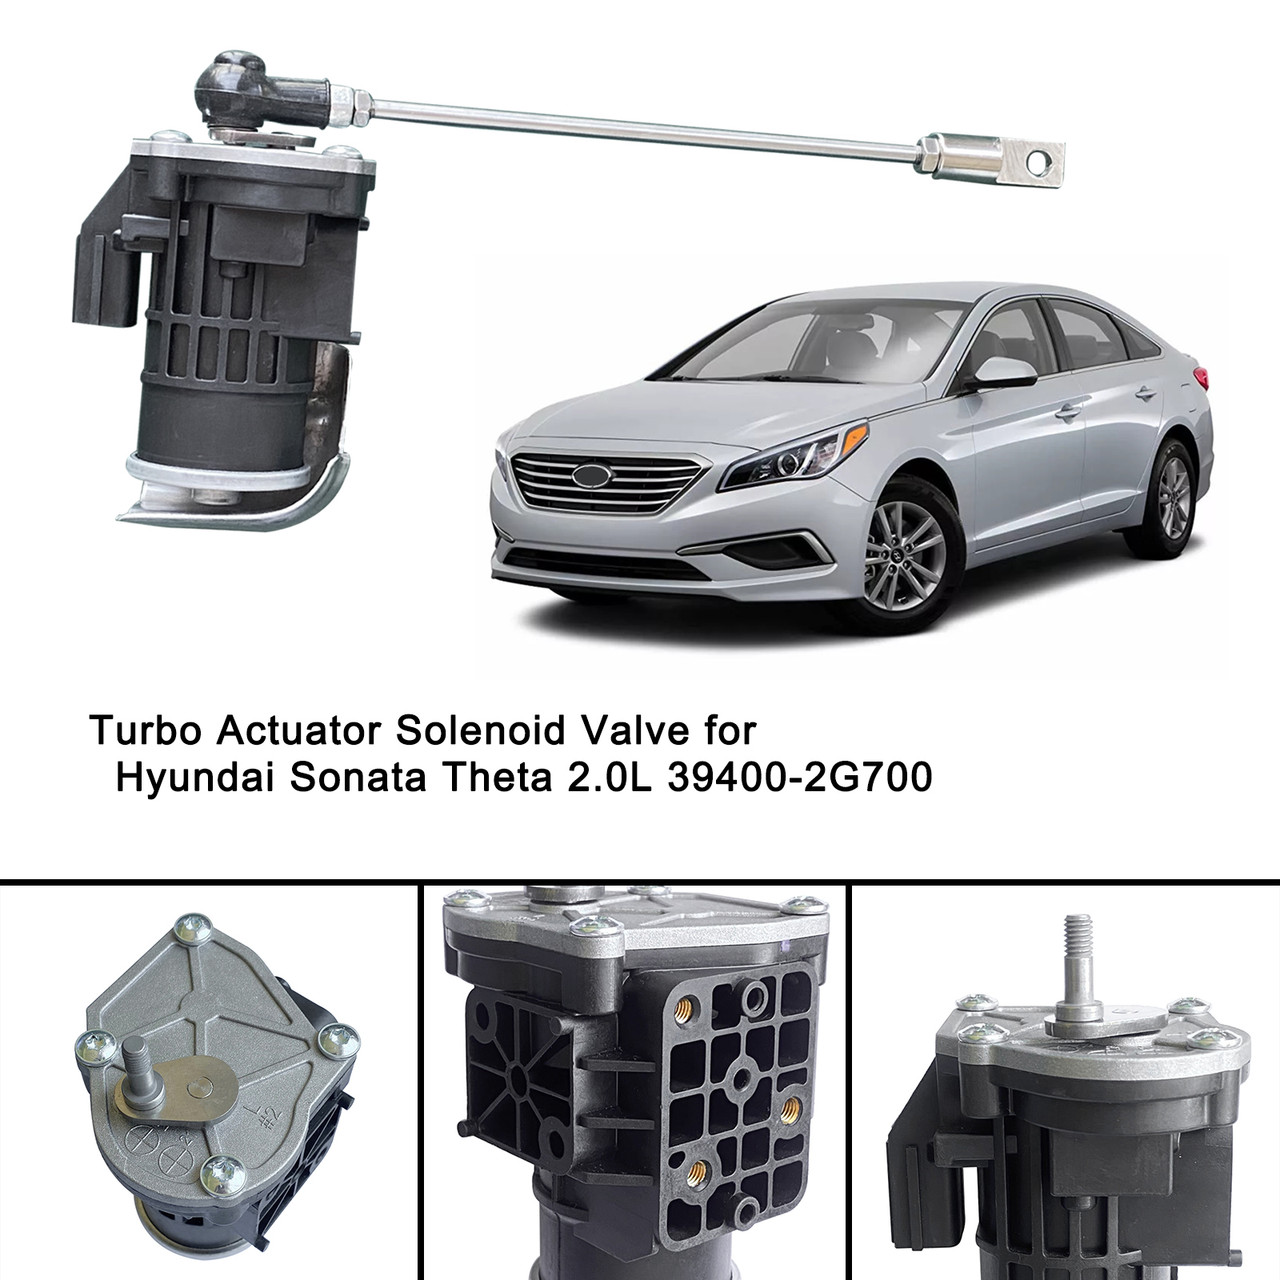 Turbo Actuator Solenoid Valve Fit For Hyundai Sonata Theta 2.0L 39400-2G700